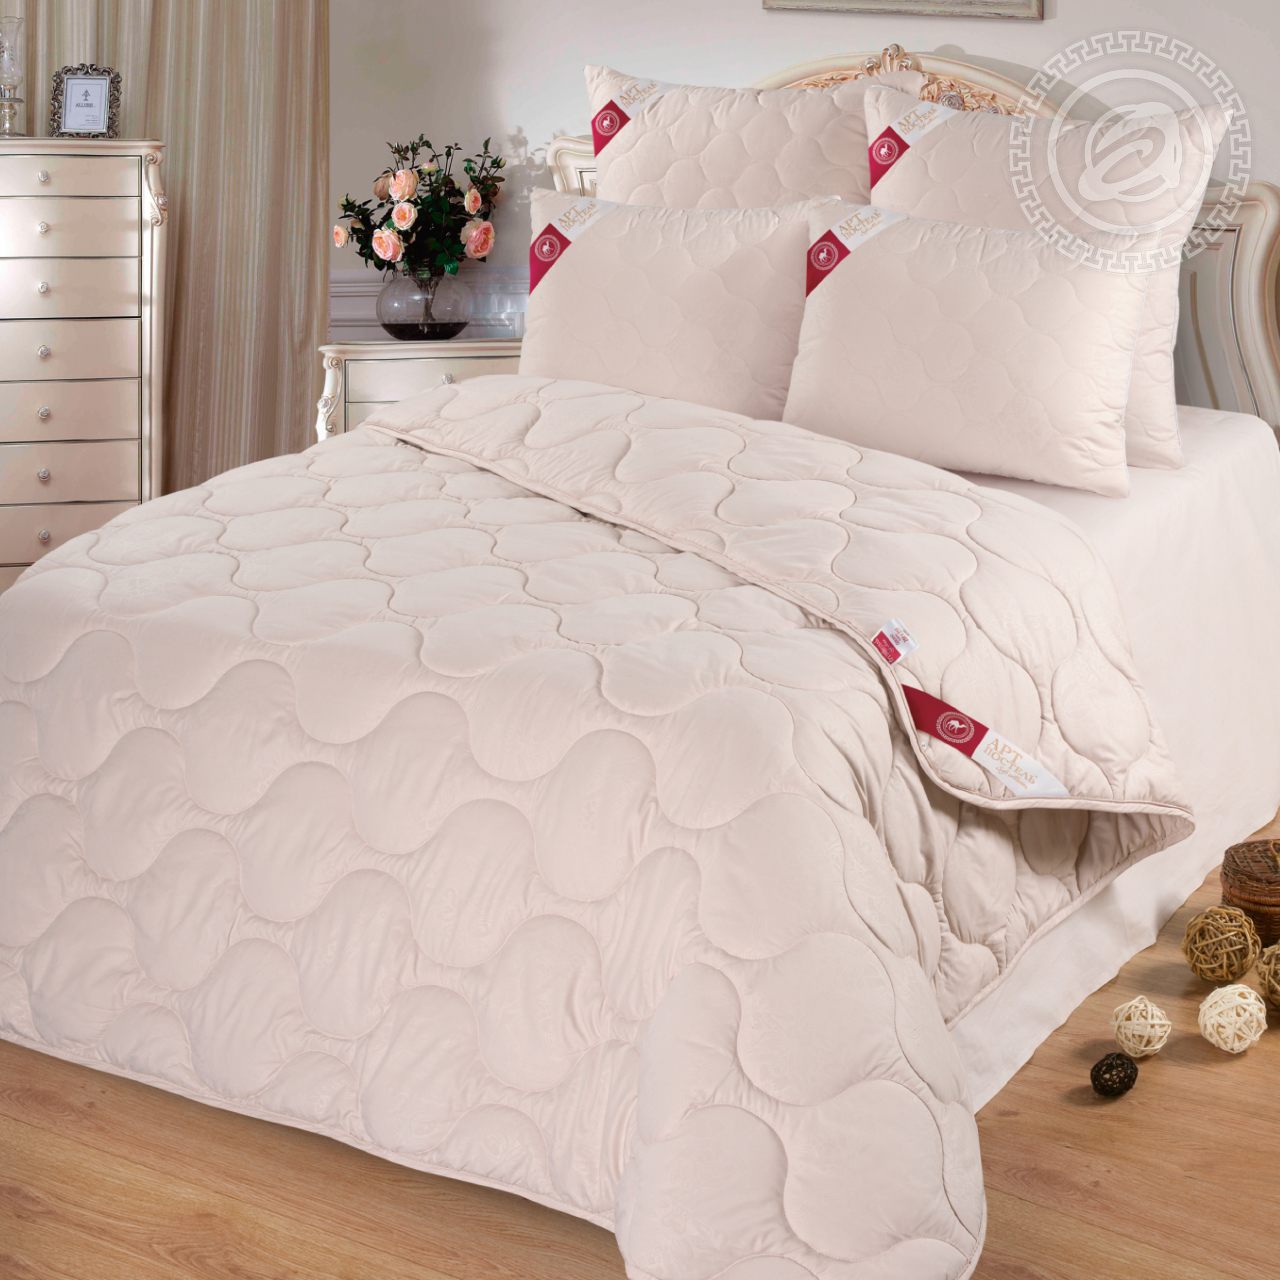 Одеяло Lorin (140х205 см), размер 140х205 см, цвет кремовый atp417162 Одеяло Lorin (140х205 см) - фото 1